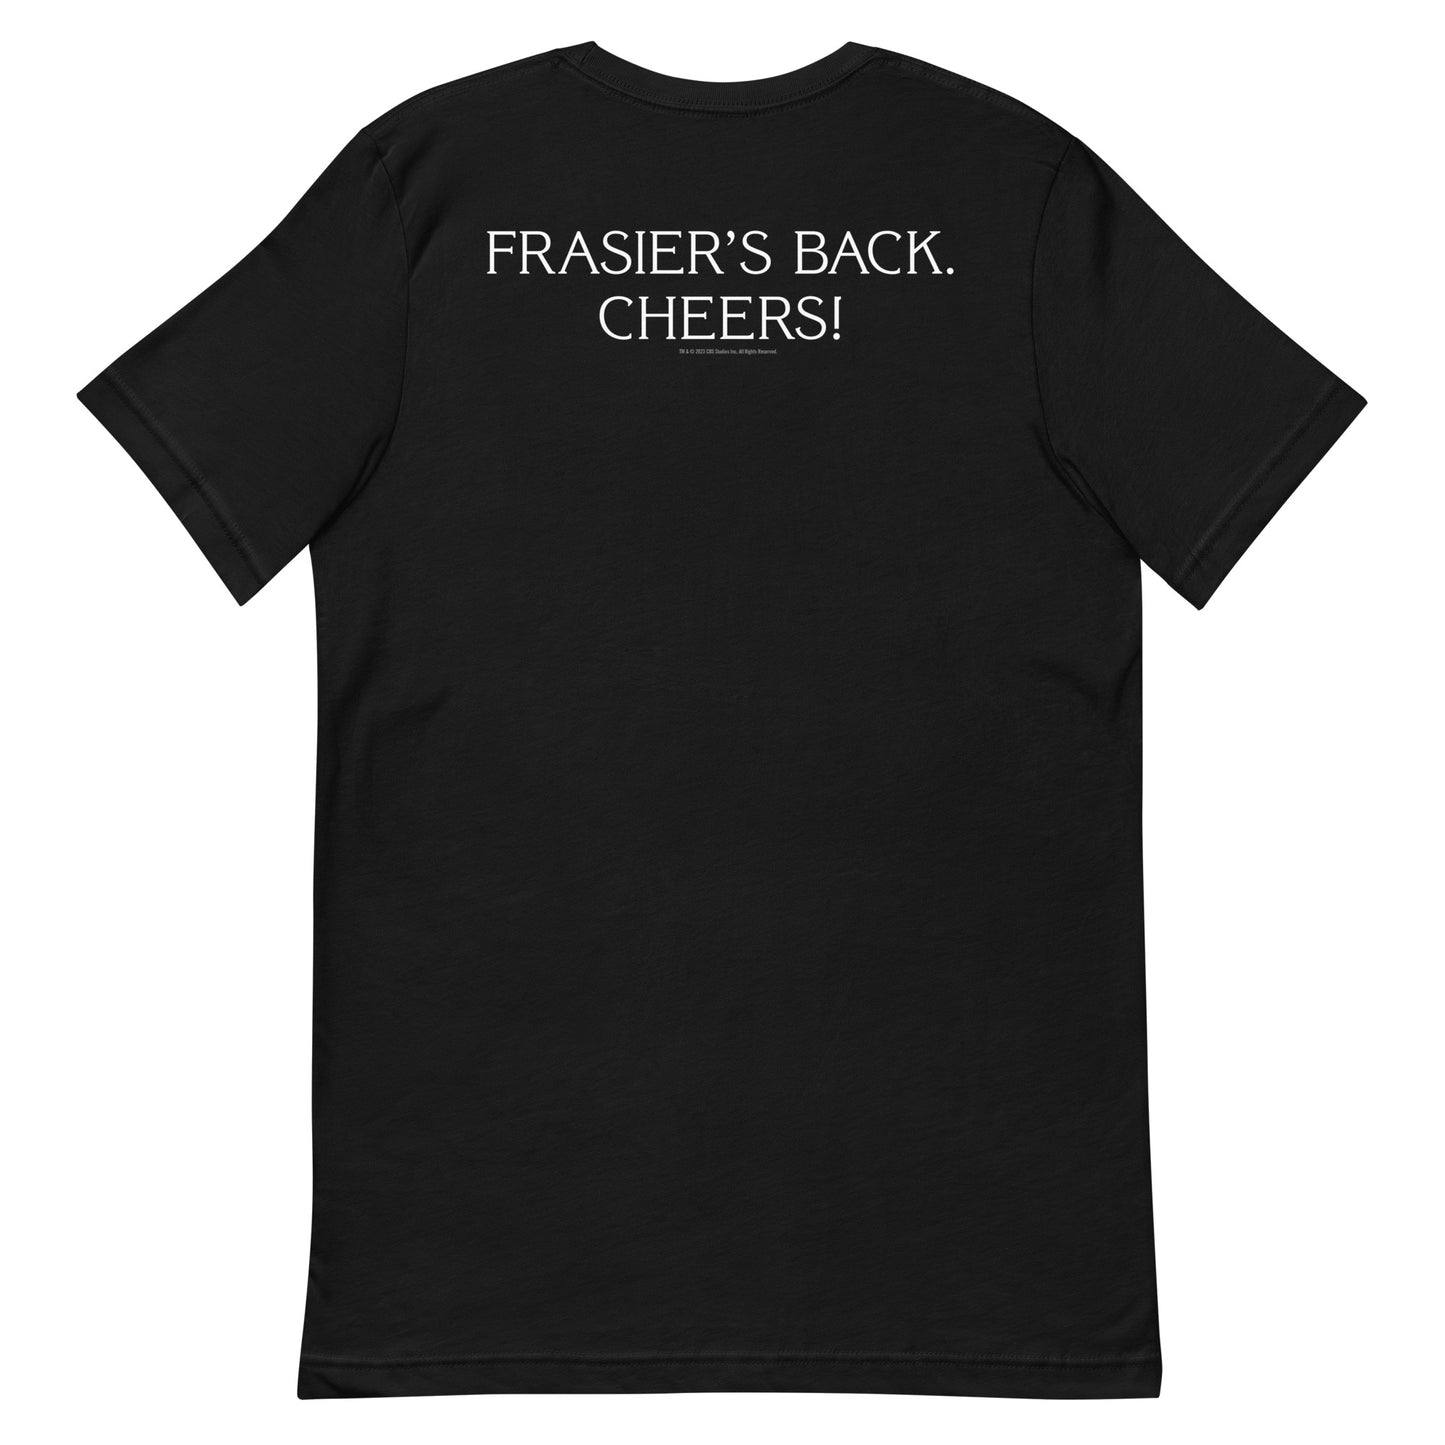 FrasierT-shirt 'Back